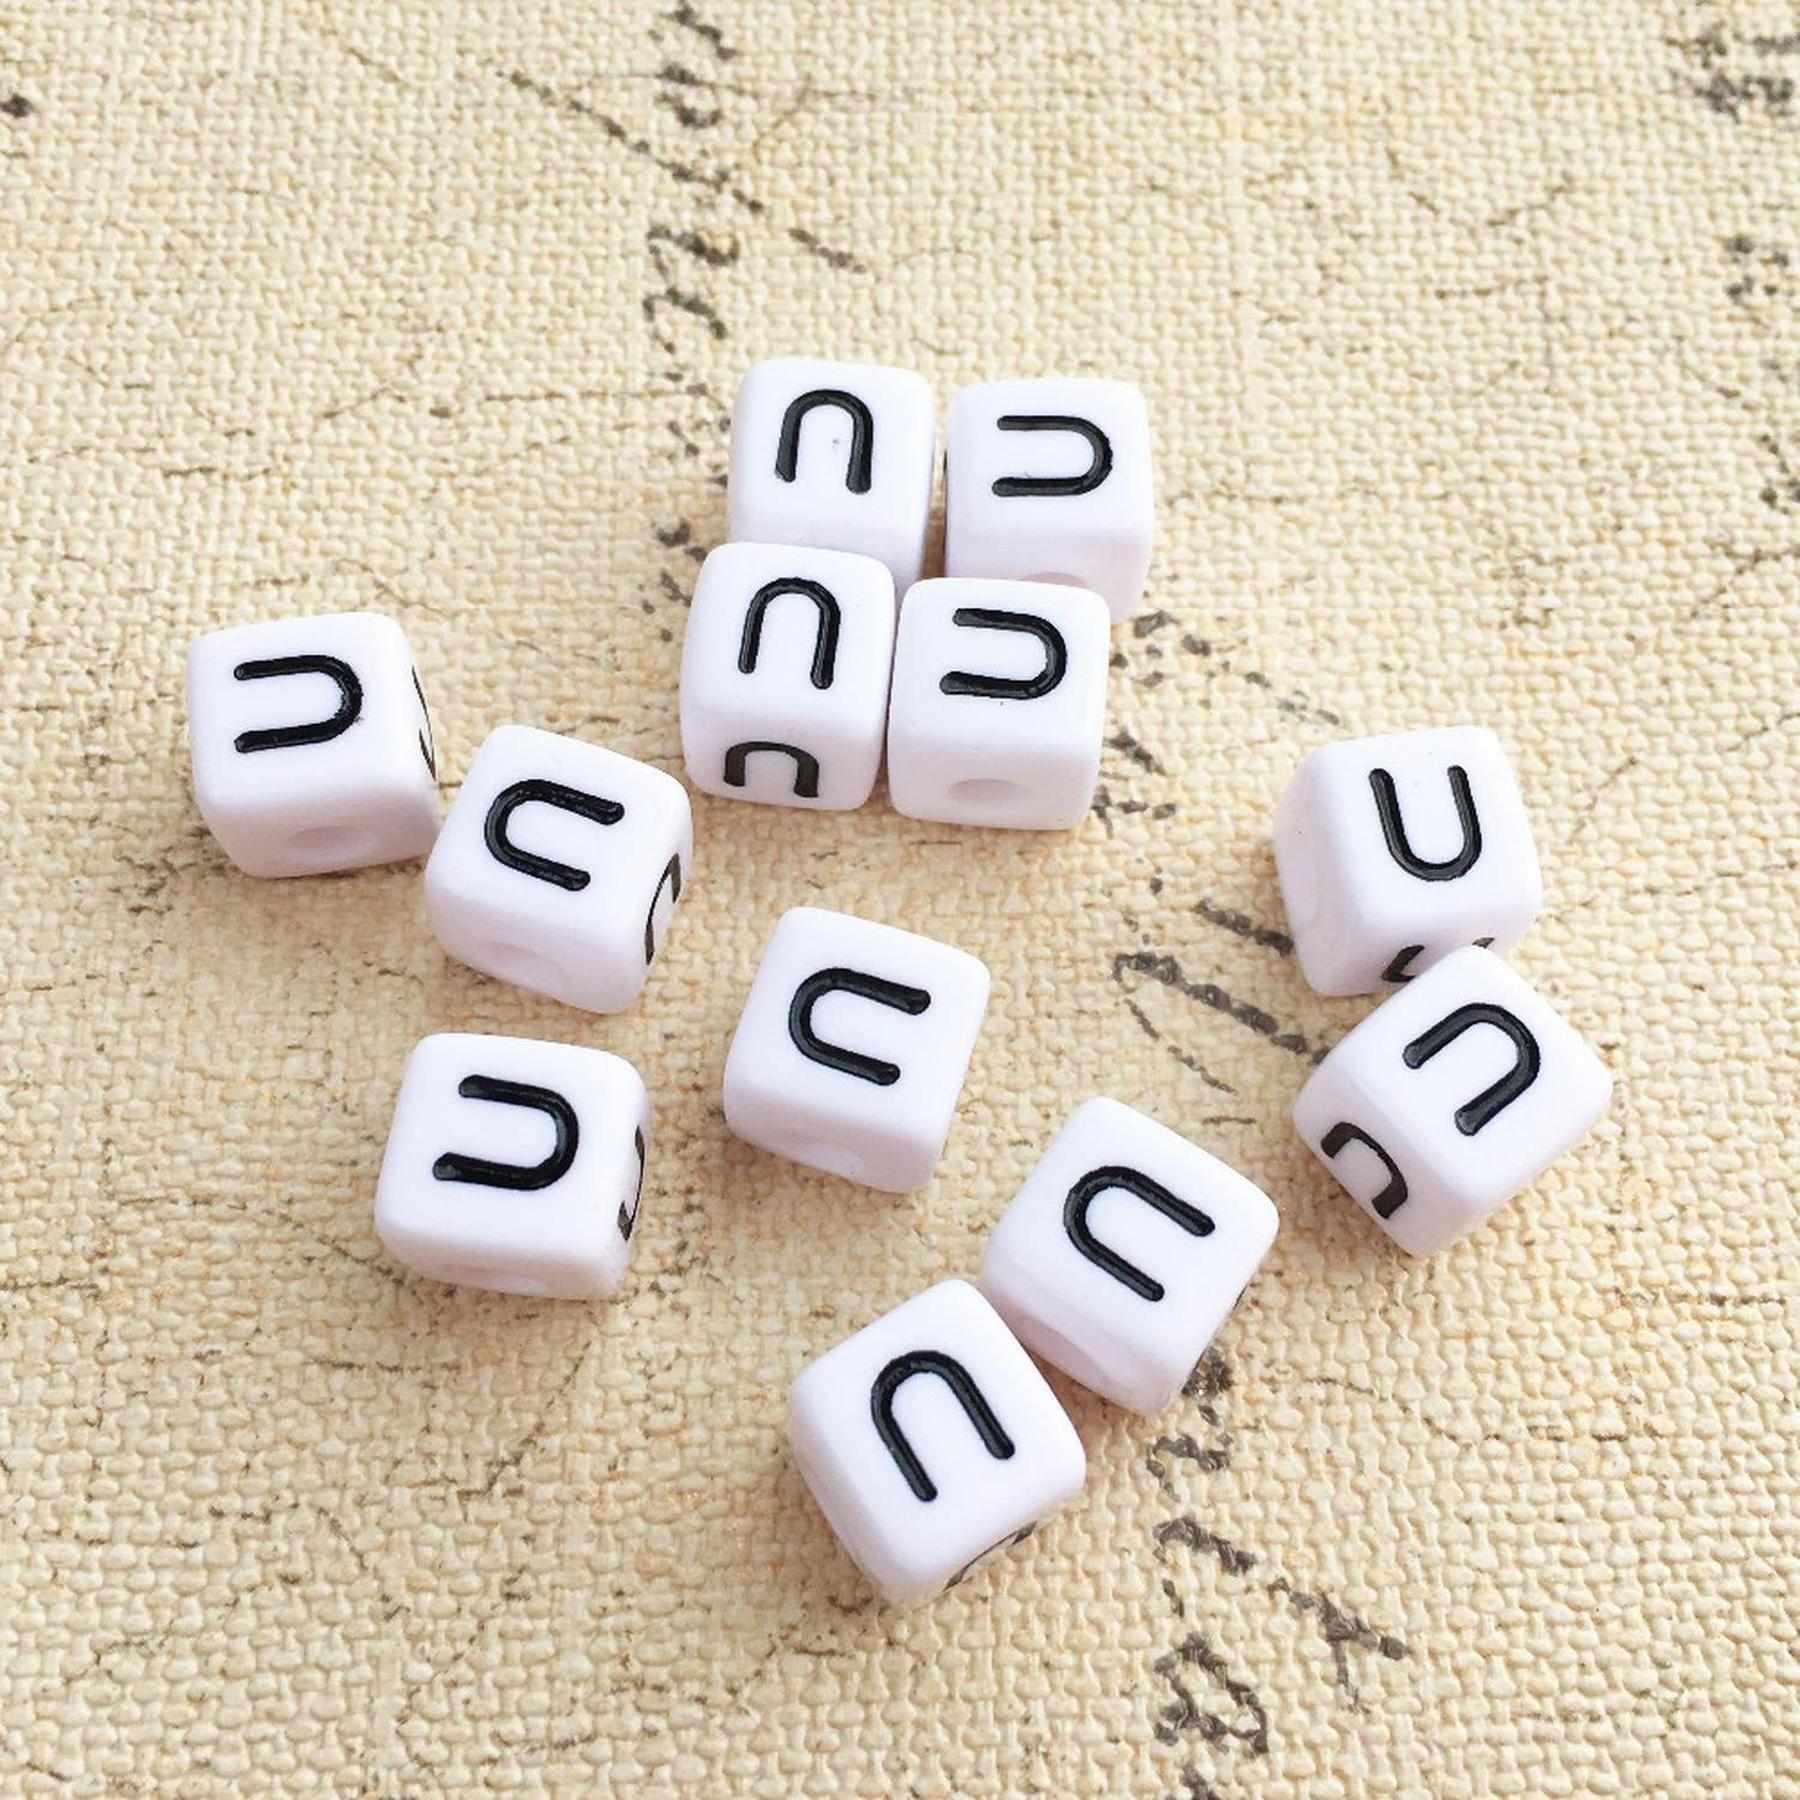 Buchstaben Perlen, 30 Stück, 6x6 mm, weiß mit schwarz, eckig, Buchstabe U